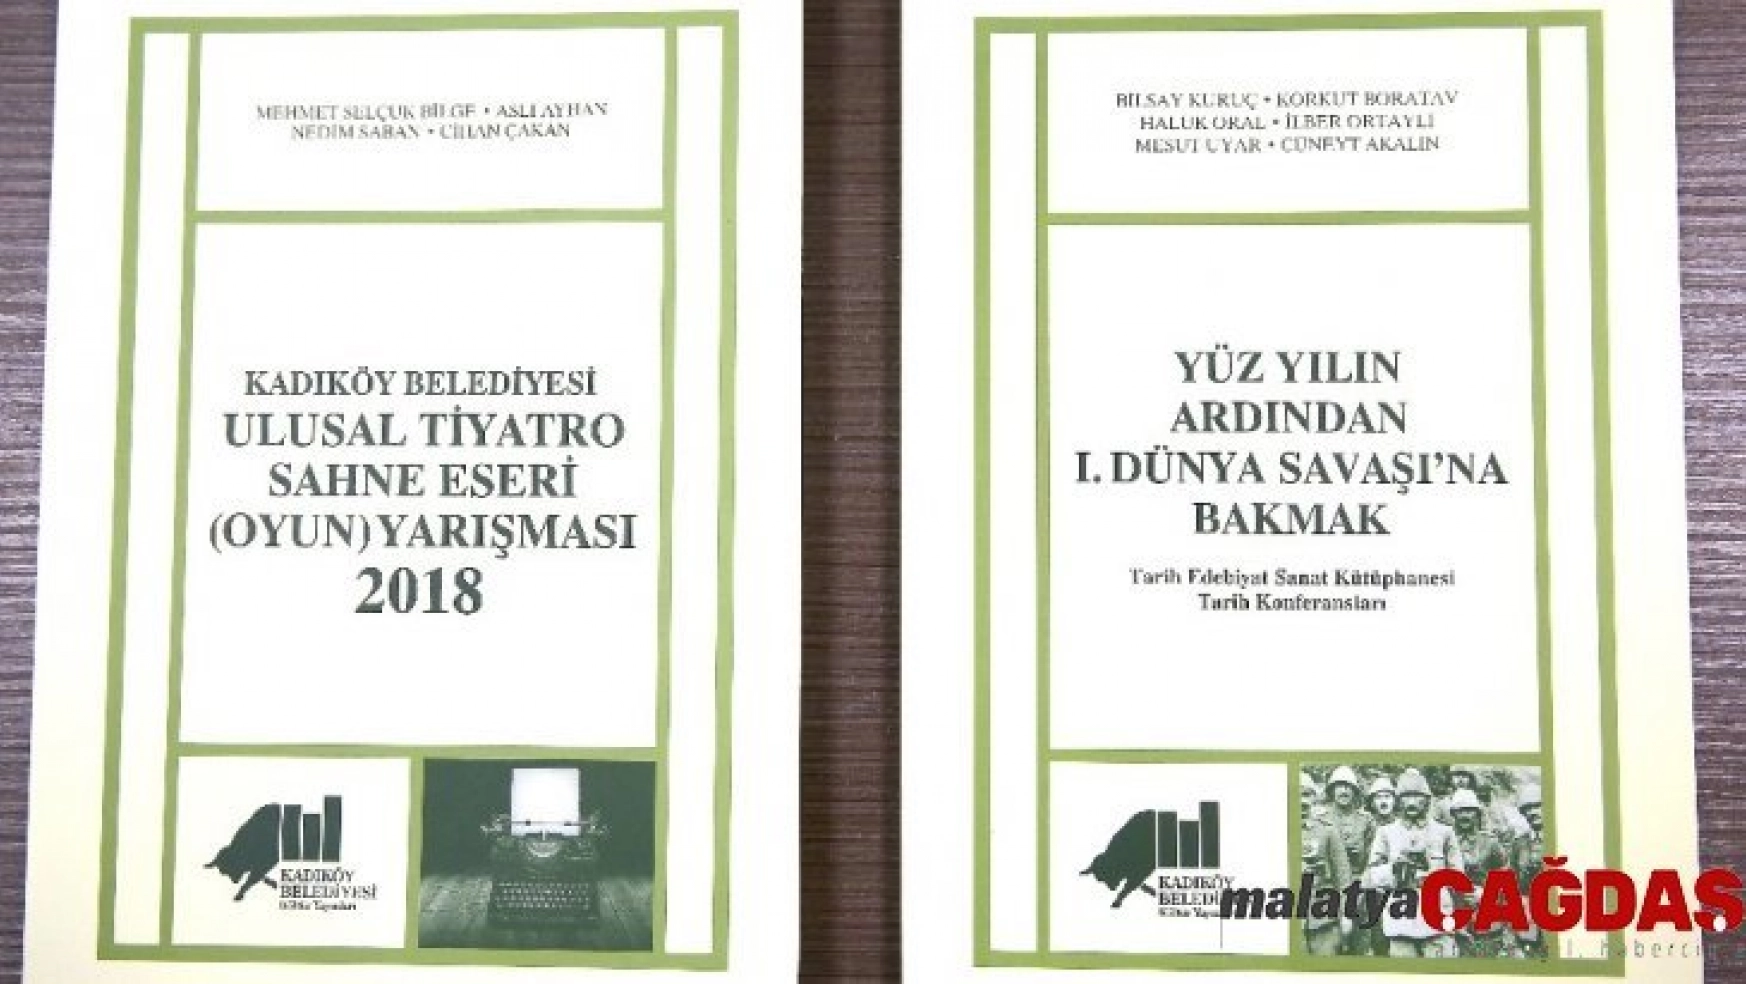 Kadıköy Belediyesi Kültür Yayınlarından çıkan iki yeni kitap raflarda yerini aldı